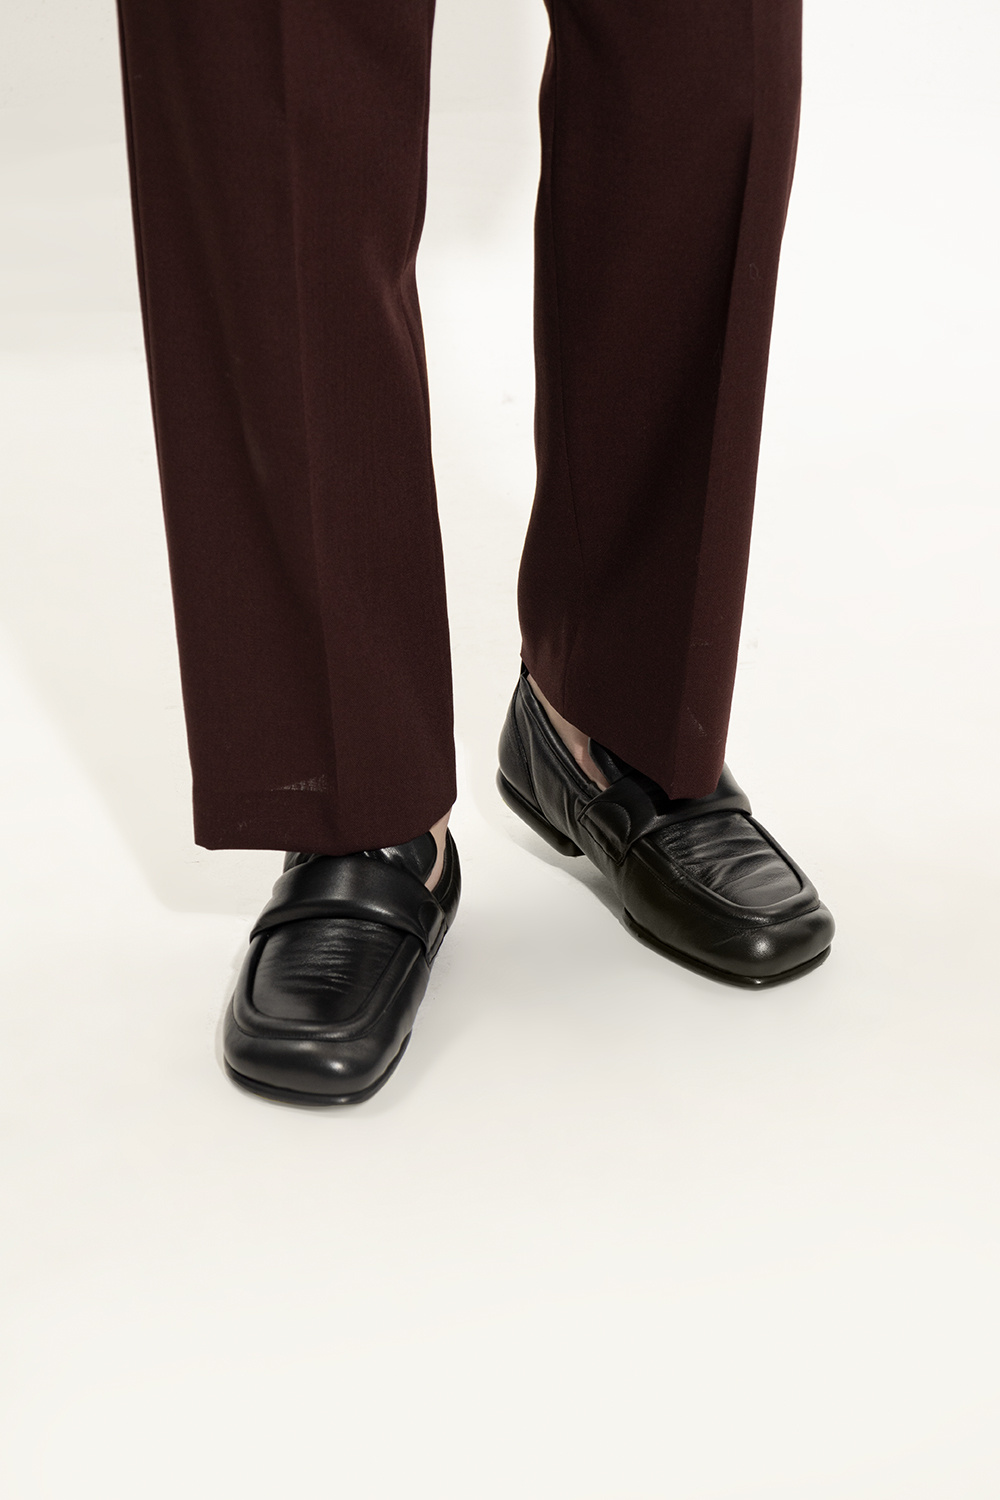 Dries Van Noten Leather loafers | Men's Shoes Vitkac